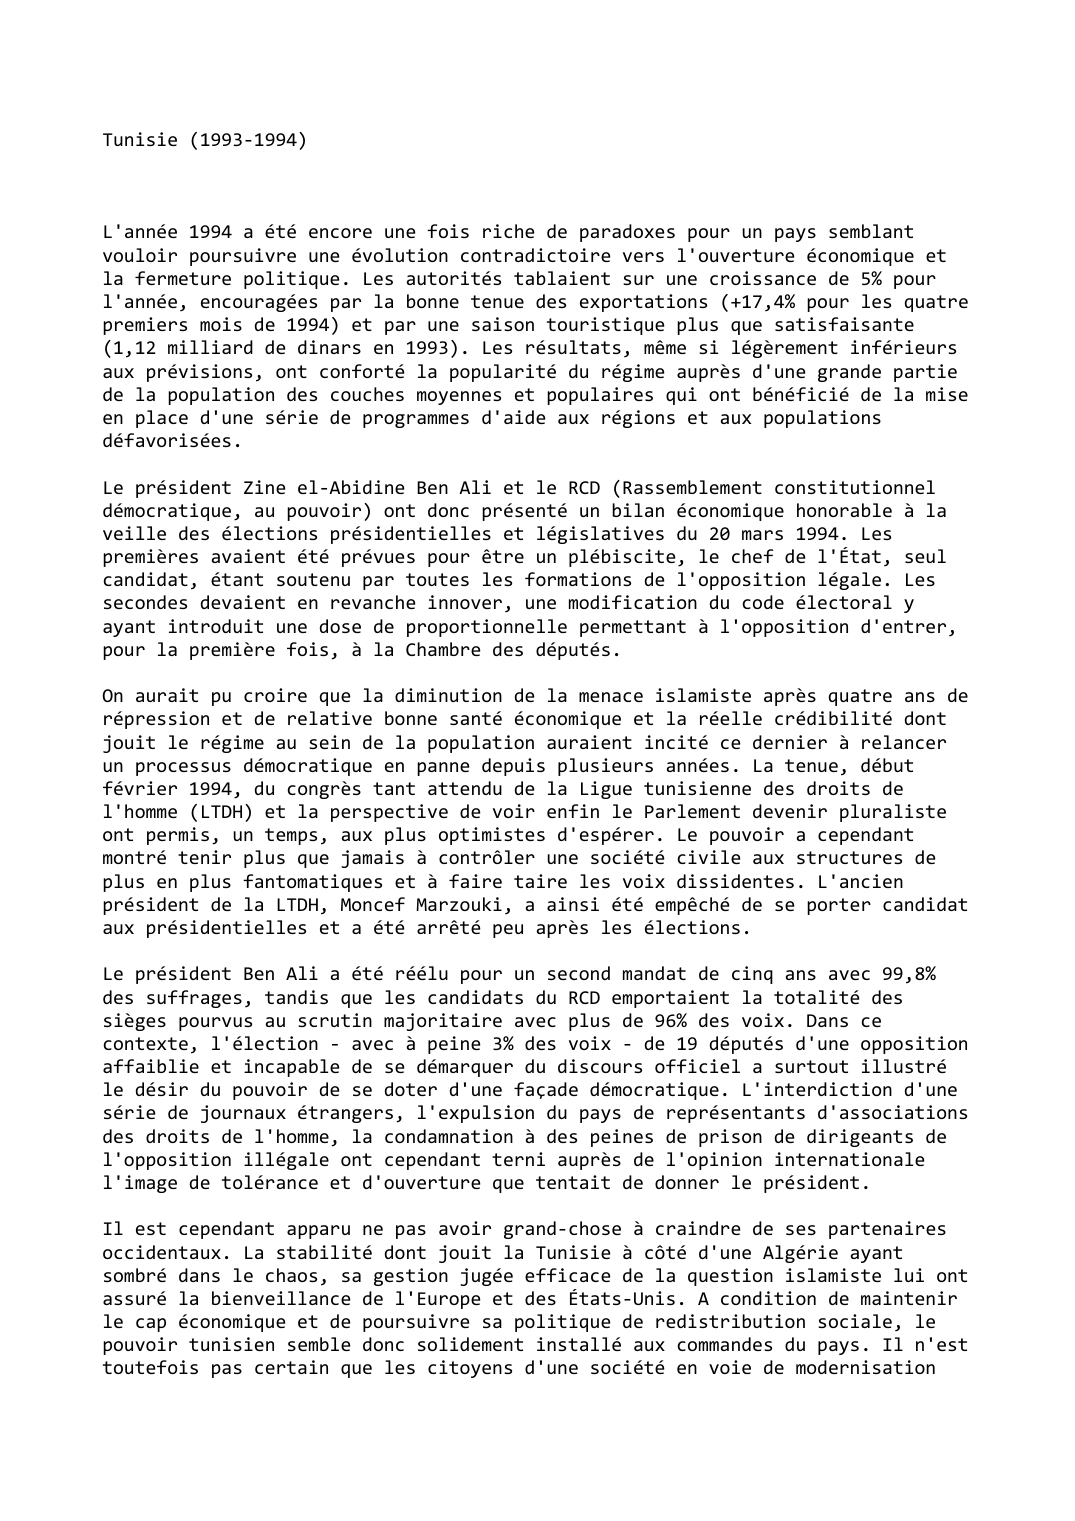 Prévisualisation du document Tunisie (1993-1994)